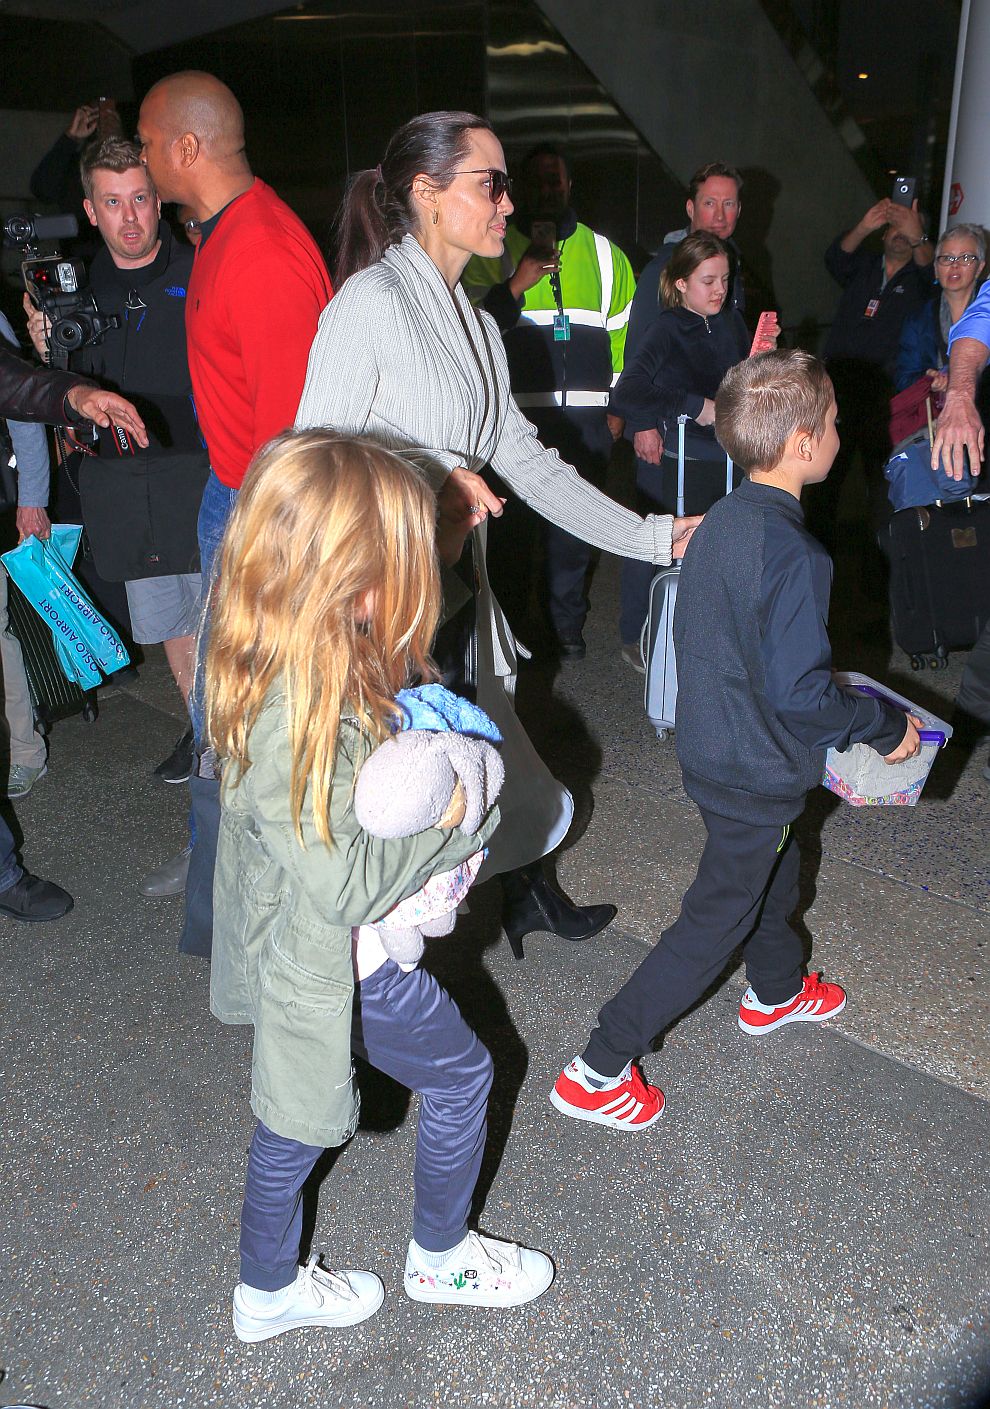 Анджелина Джоли има шест деца - Шайло и близнаците Нокс и Вивиен от актьора Брад Пит и осиновените Мадокс, Пакс, Захара.